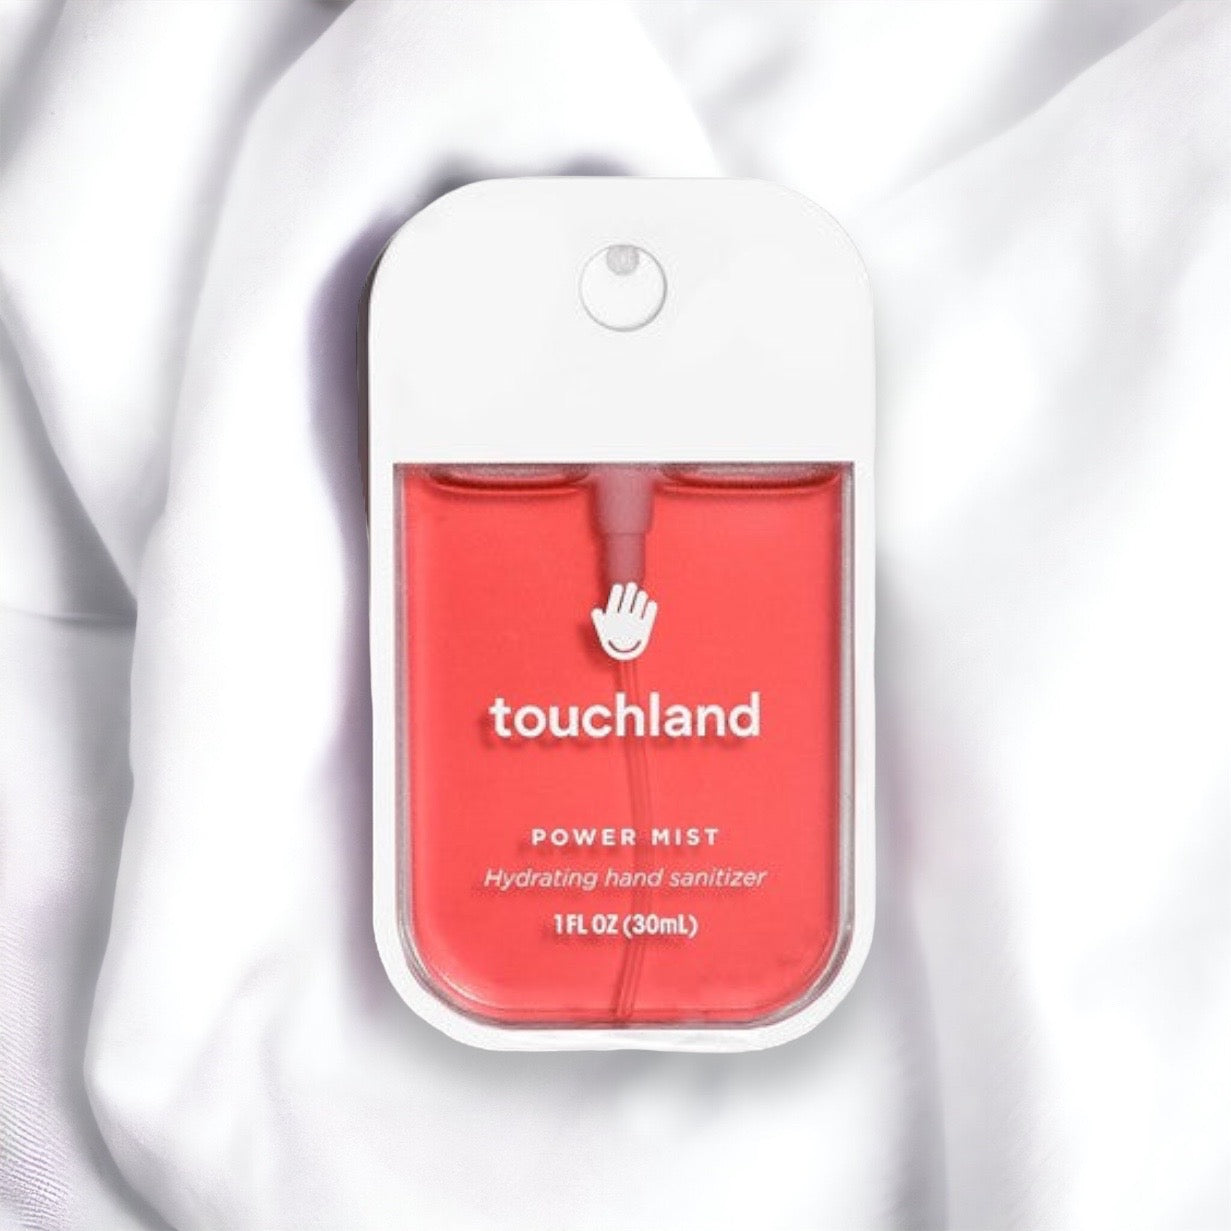 Touchland Power Mist Wild Watermelon Hand Sanitizer